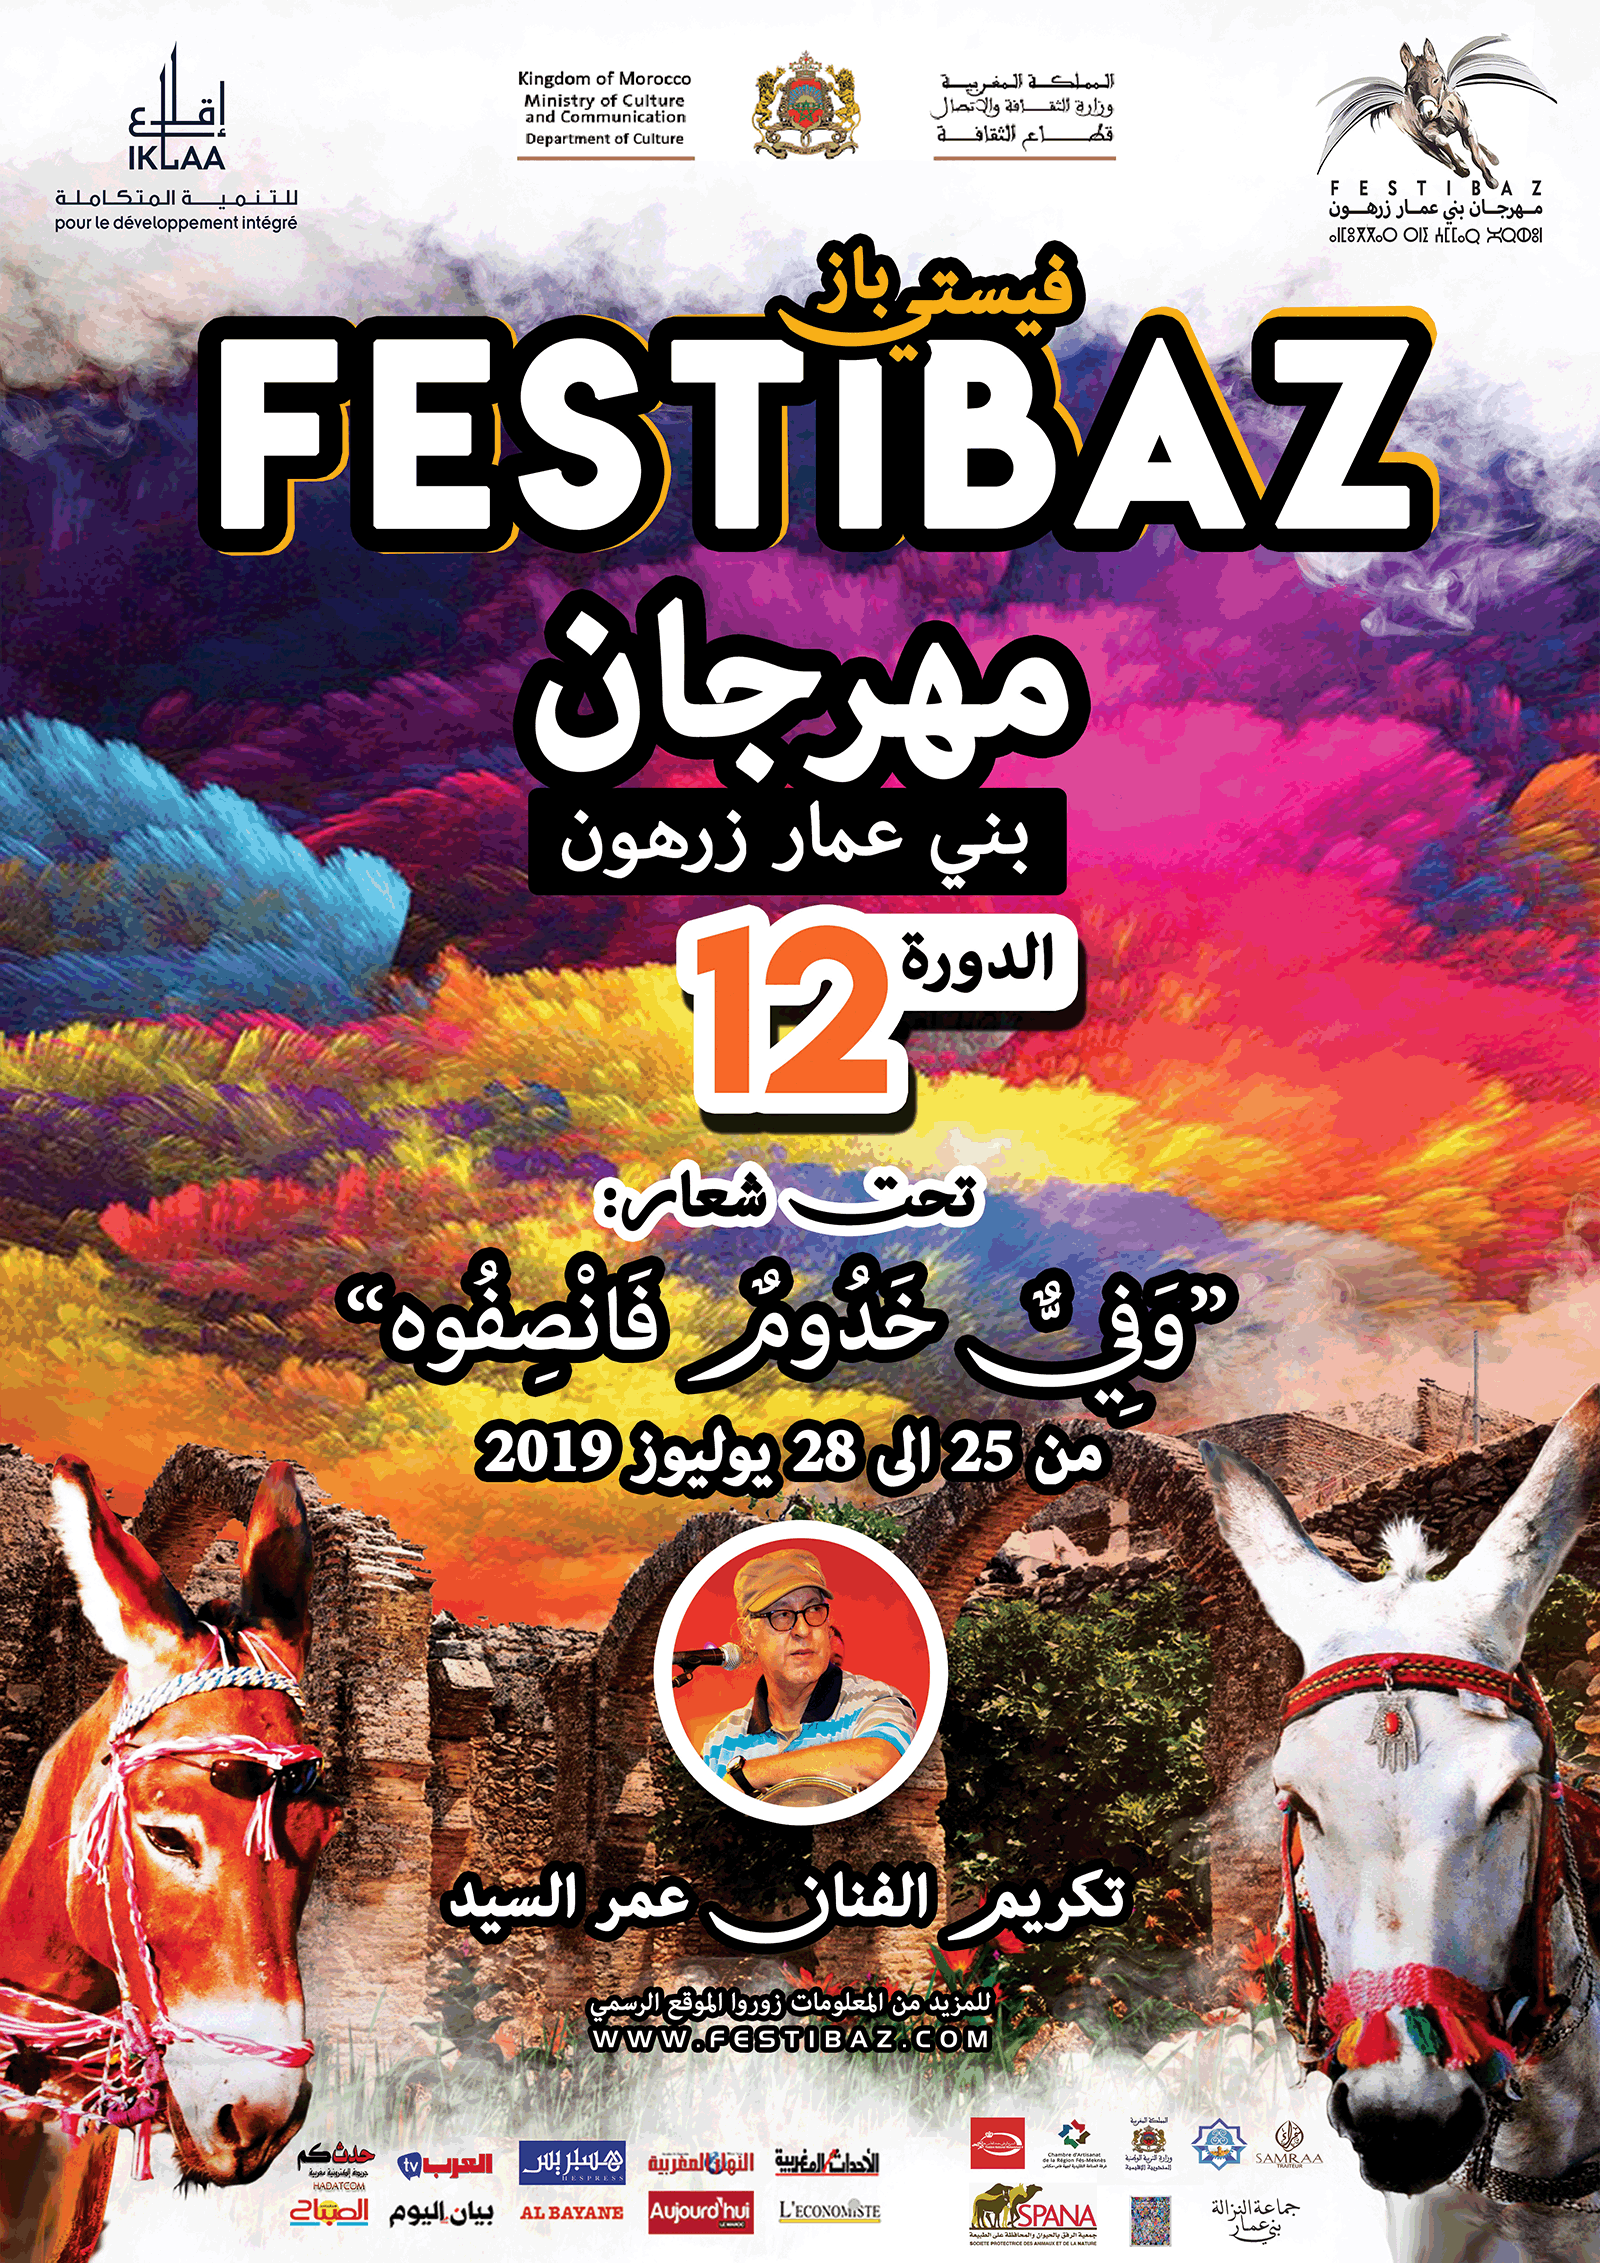 FestiBaz A3 Banner 1 1